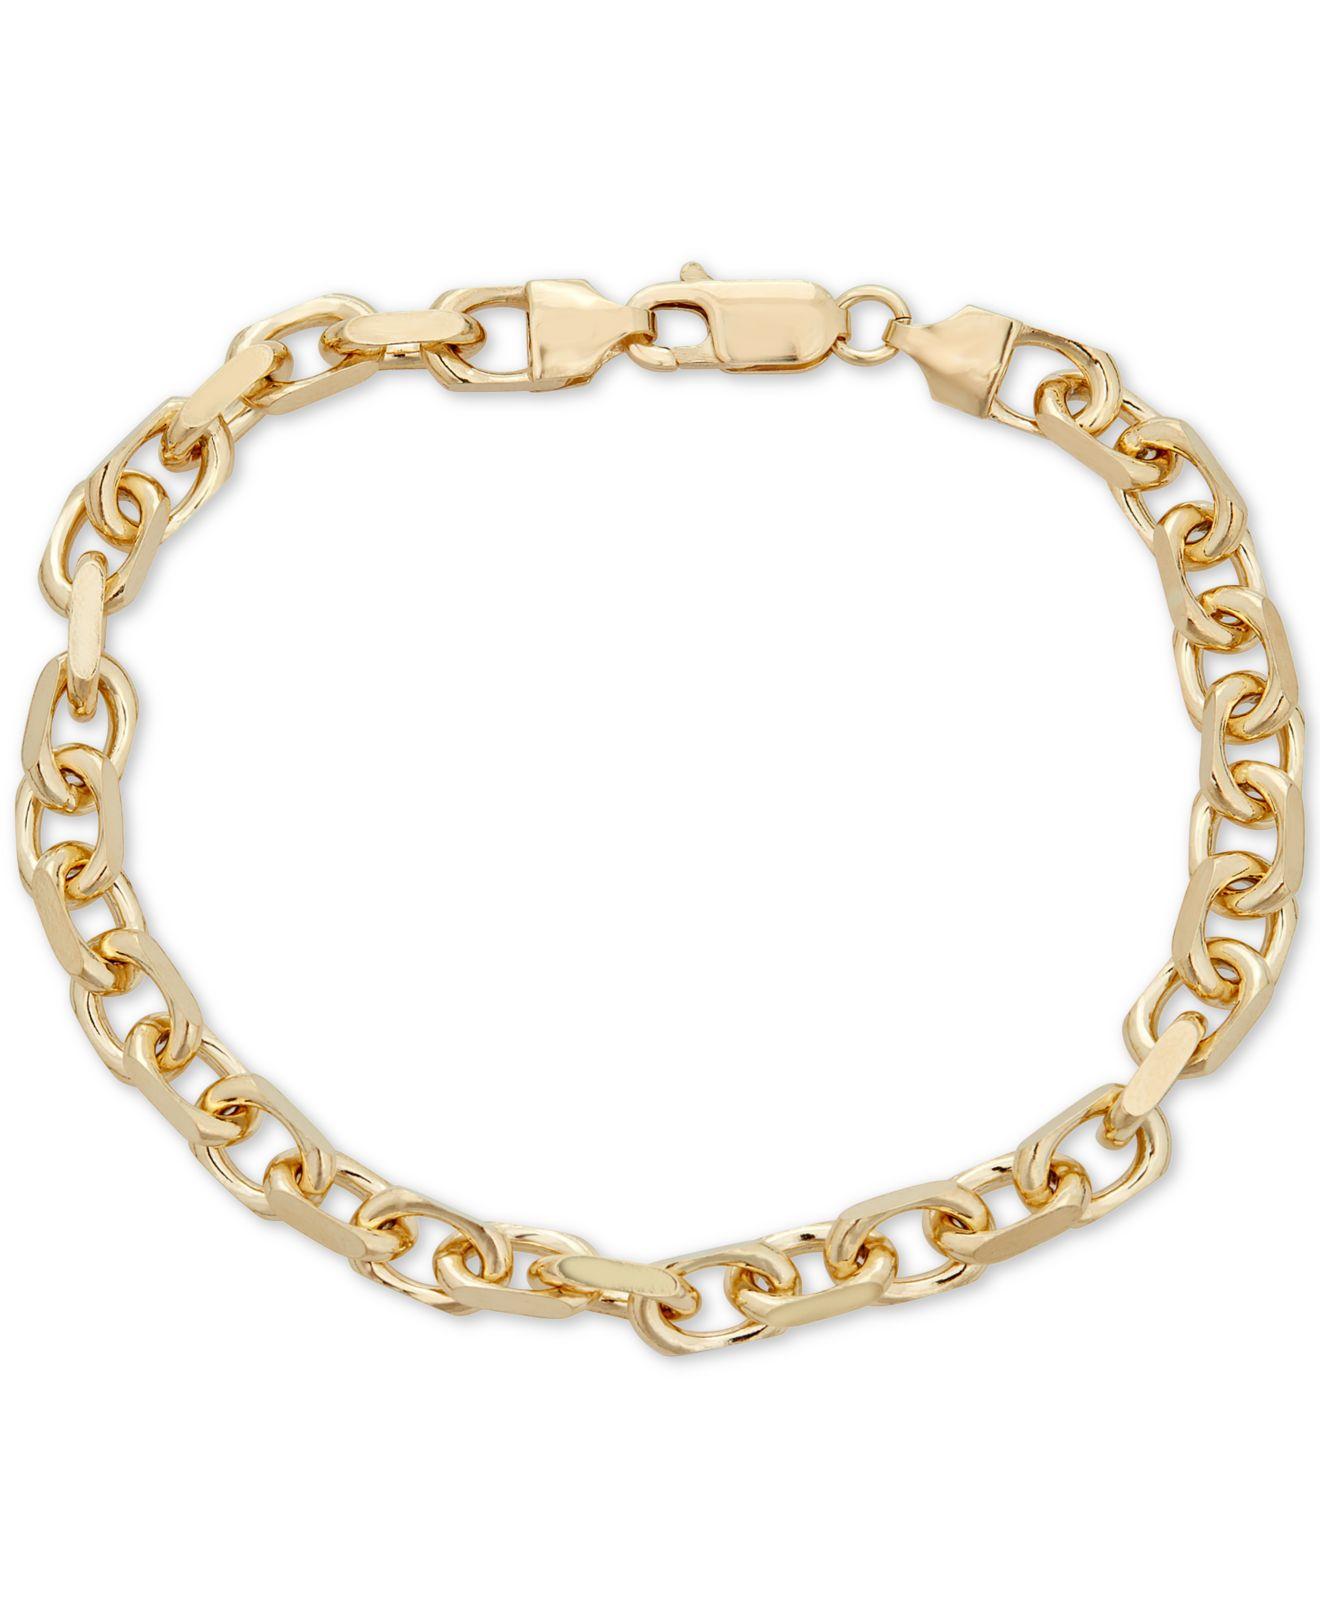 Macy's Oval Rolo Chain Bracelet In 18k Gold Over Sterling Silver in ...